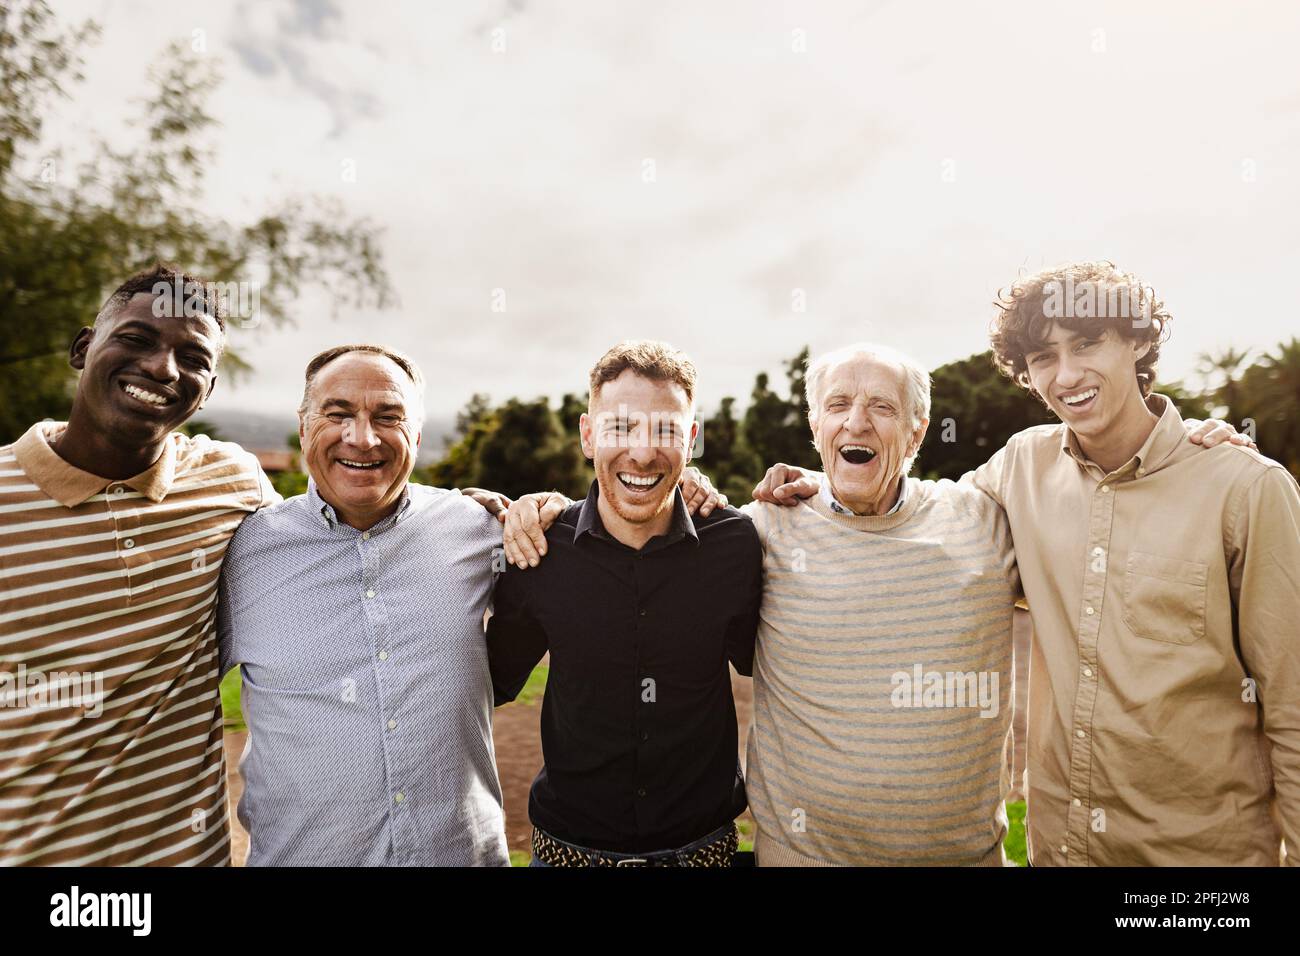 Heureux groupe multigénérationnel d'hommes avec différents âges et ethnities ayant le sourire amusant devant l'appareil photo au parc Banque D'Images